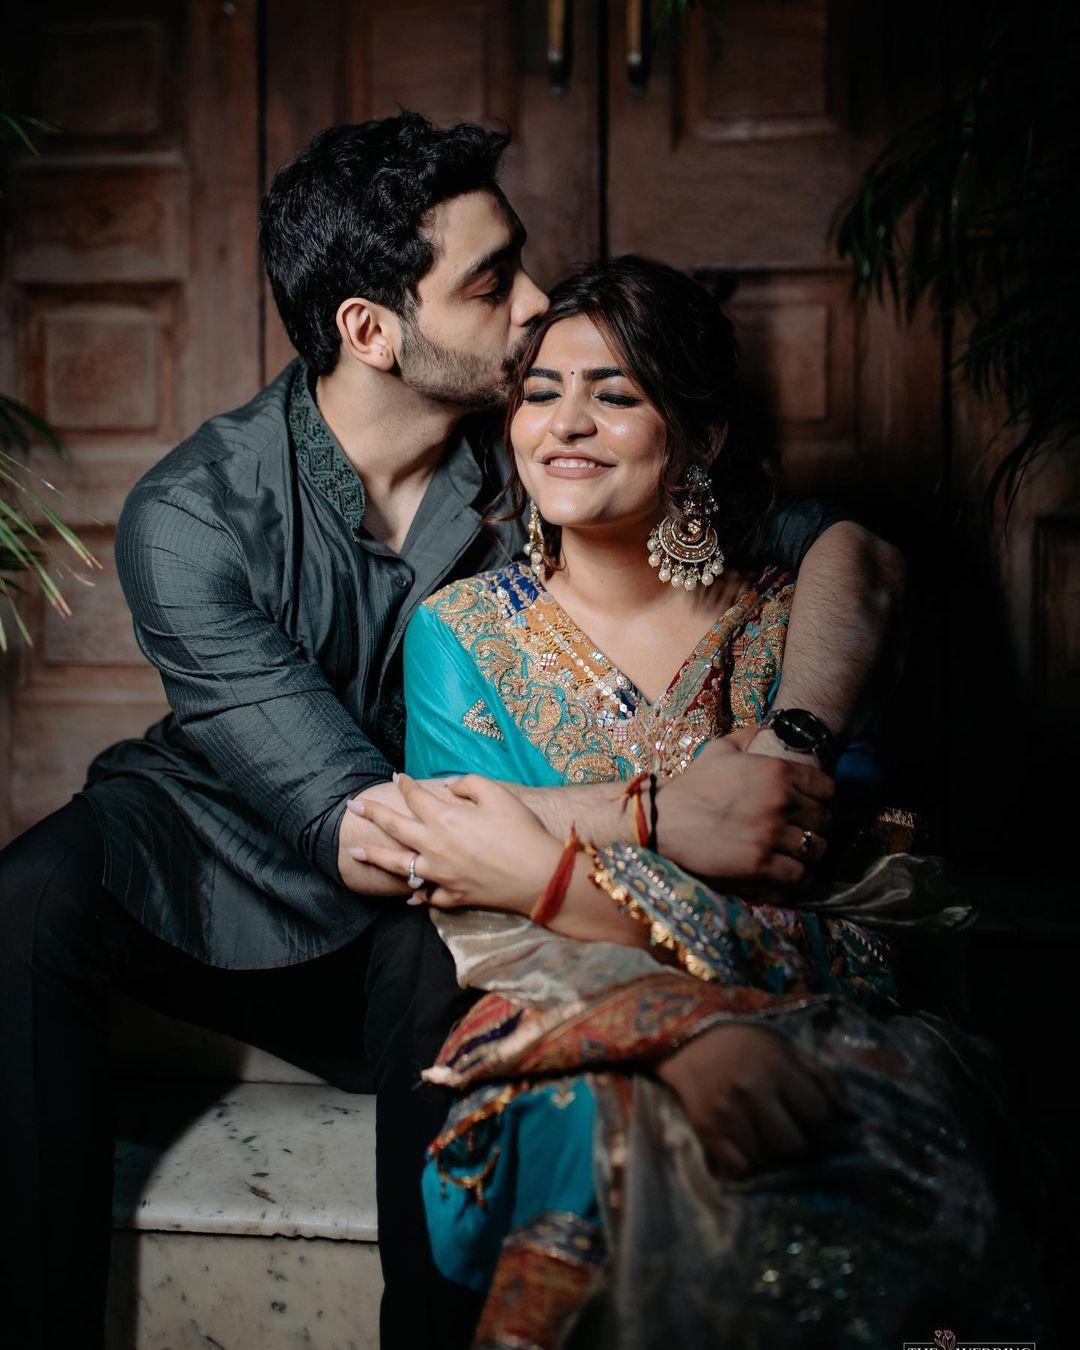 Meem Noon Productions - weddings - Cheers to the happy couple! #Wedding  #Engagement #Barat #weddingday #Photography #MeemNoonPhotography  #PakistaniWedding #MeemNoonWeddings #Barat #Pakistan #MeemNoonPhotography  #Weddingphotography #Pakistaniwedding ...